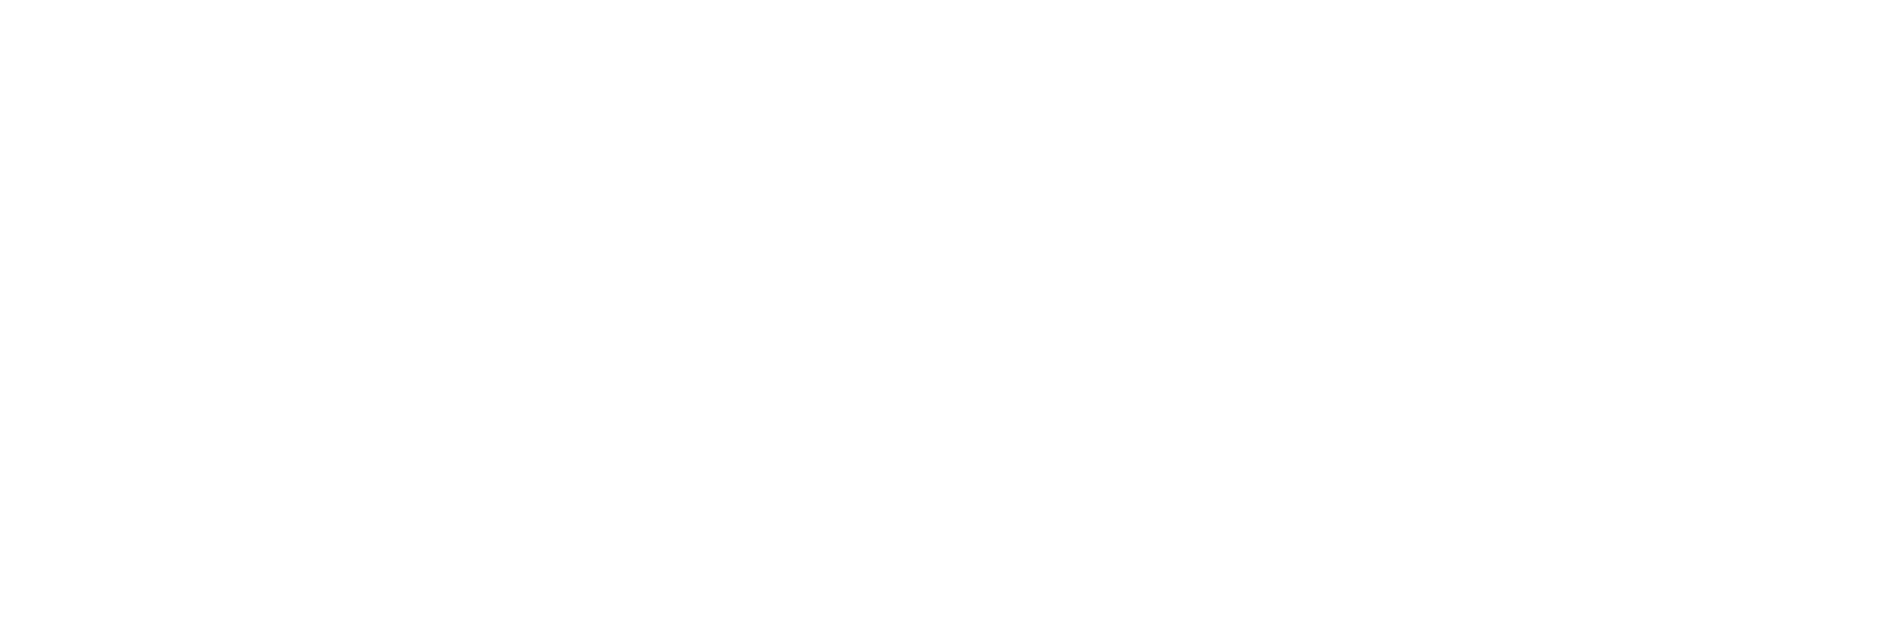 MagyarBrands díj 2021-2022